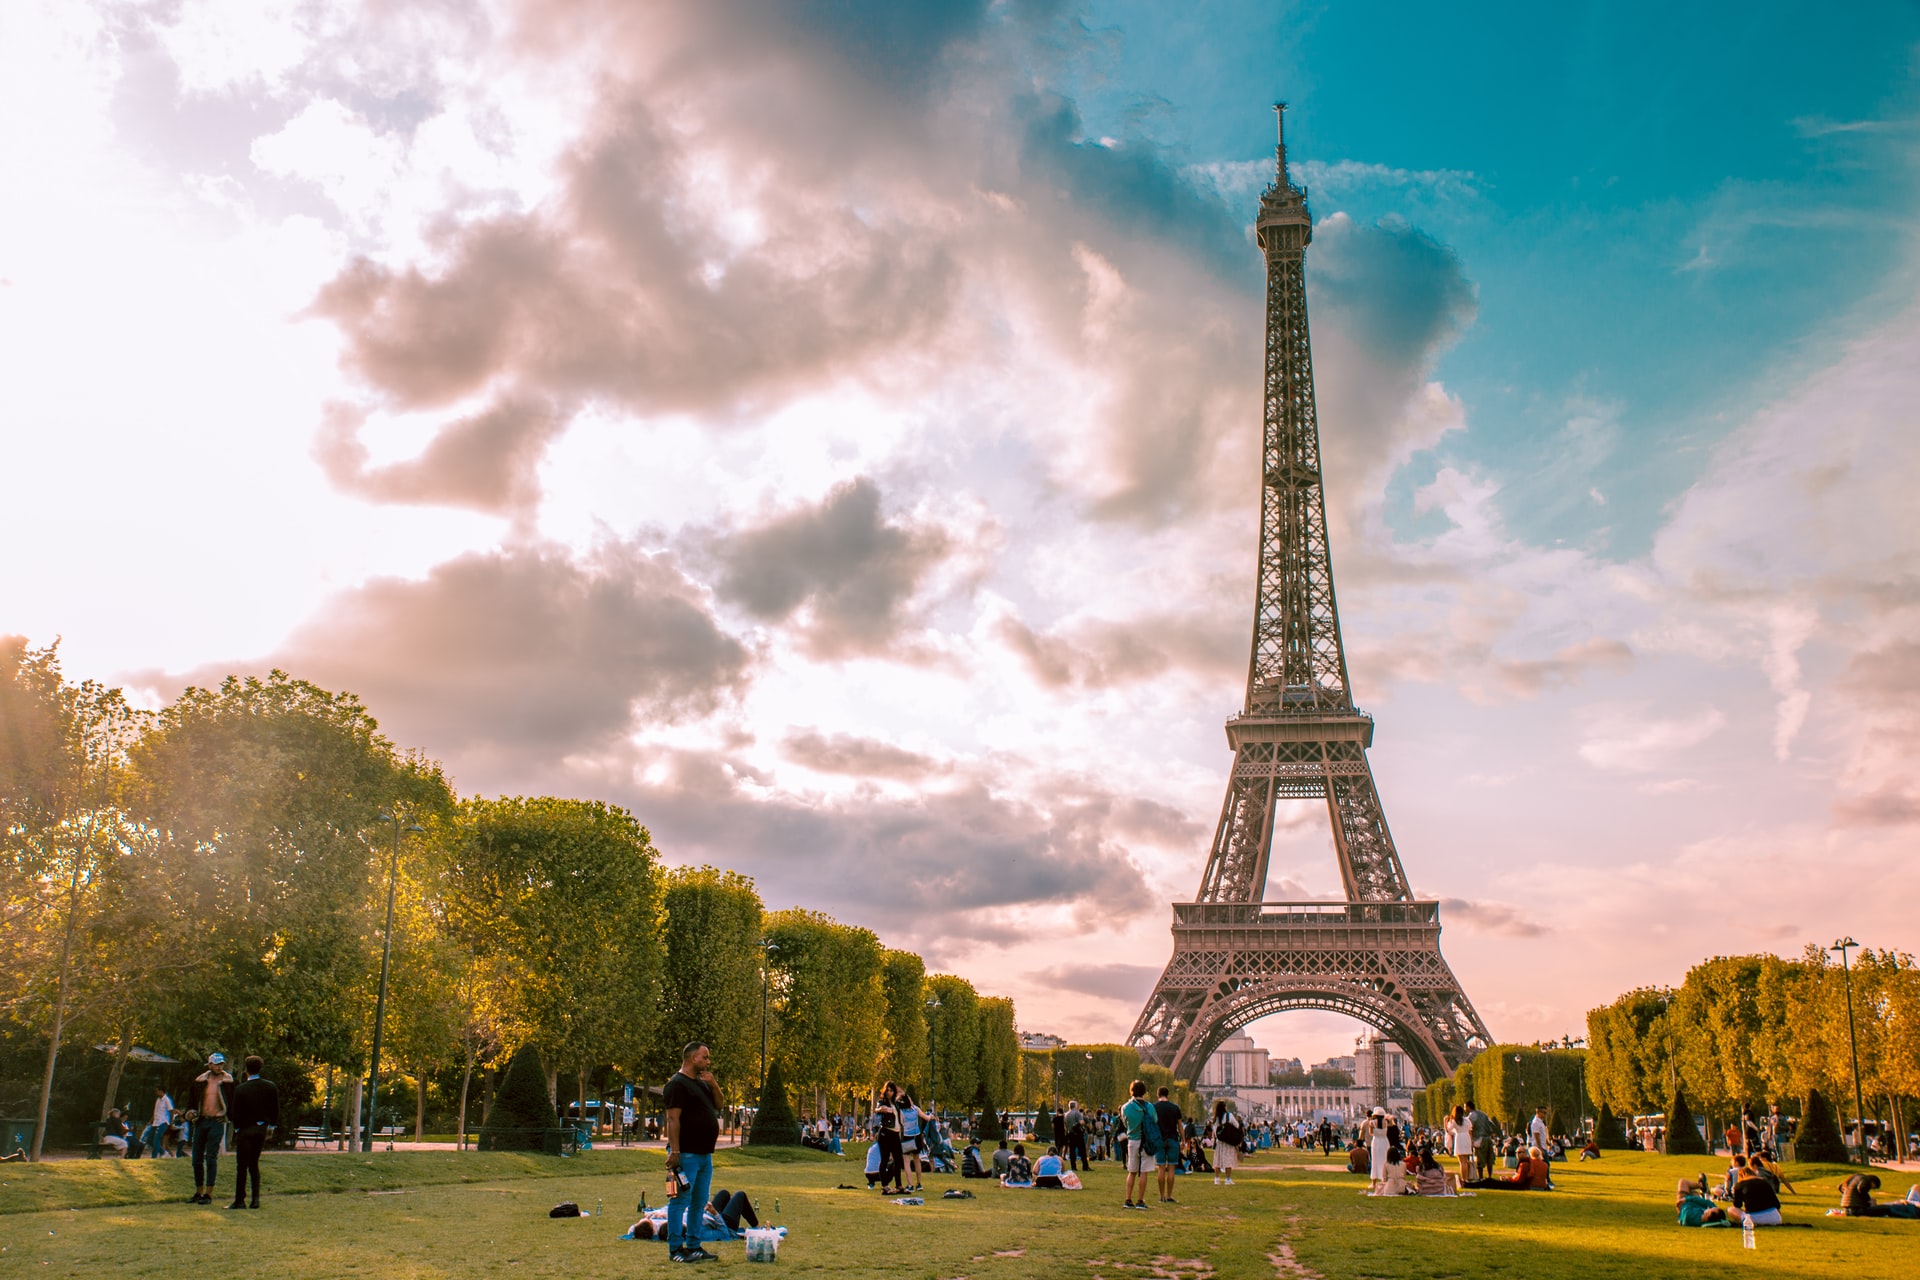 Si viatges a París i no veus la Torre Eiffel, has estat de debò a París? Si us quedeu en aquesta zona, podeu arribar a veure la torre des del vostre llit d'hotel.